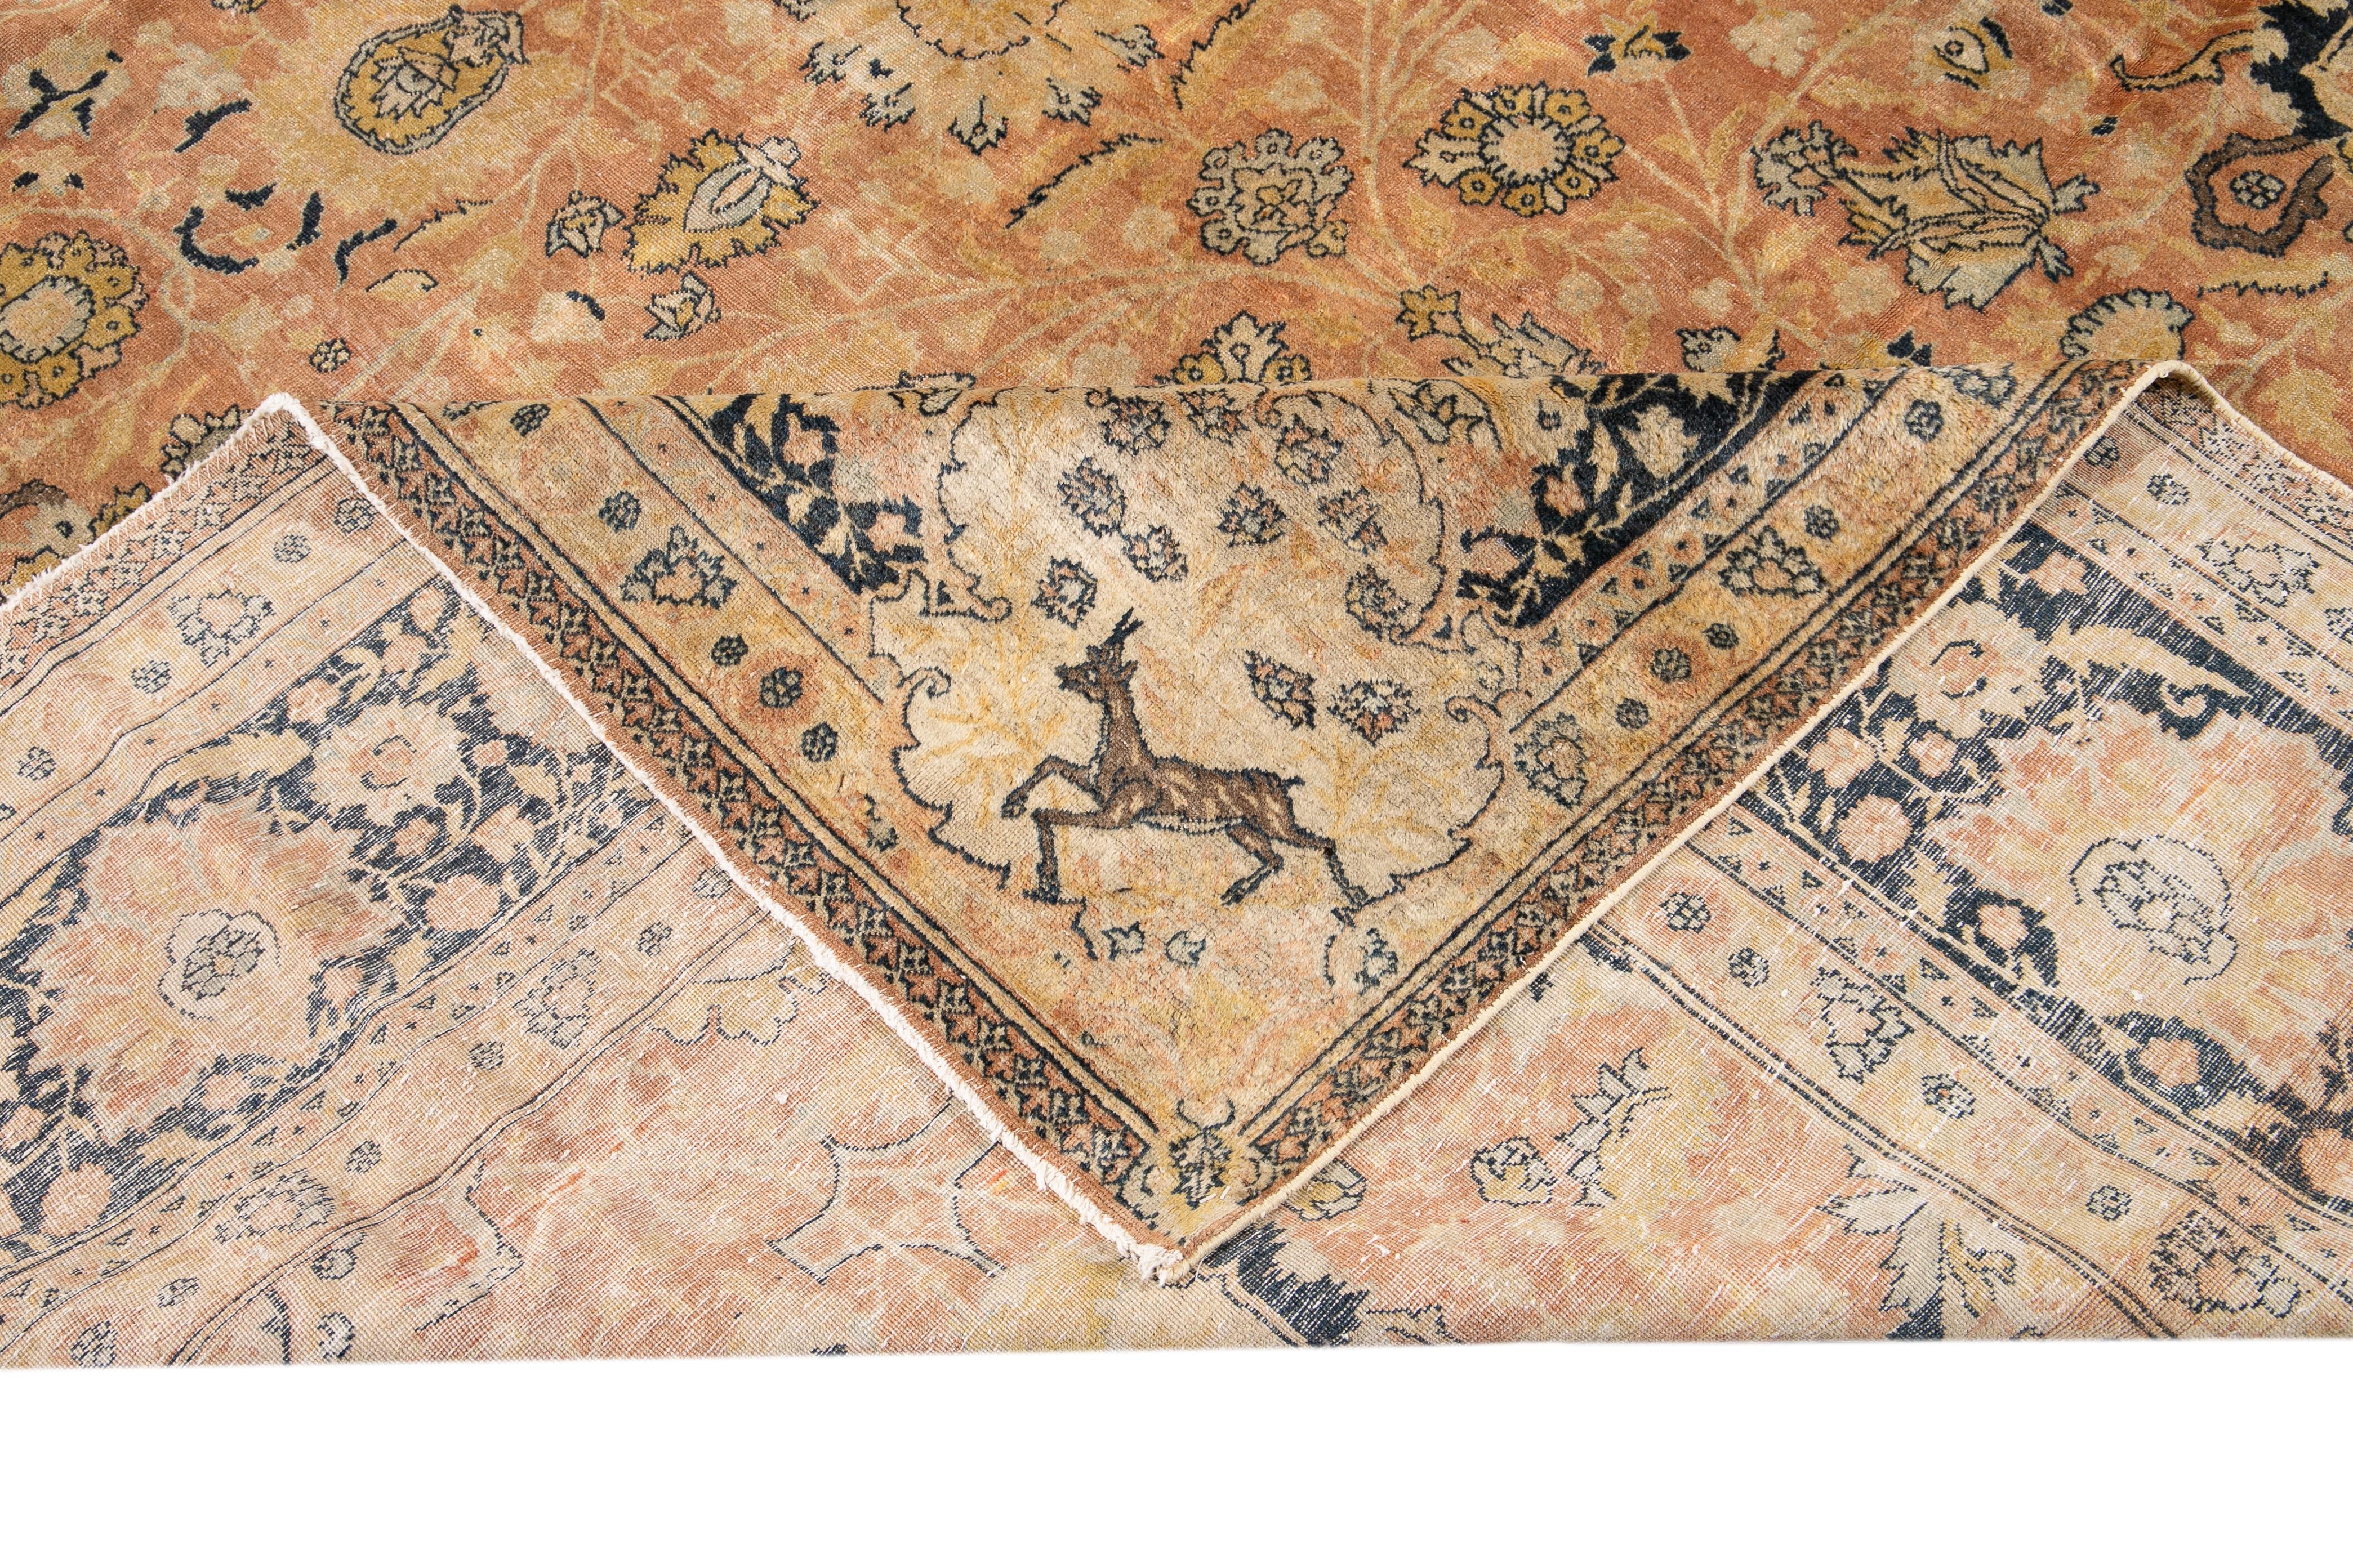 Magnifique tapis antique Agra en laine nouée à la main avec un motif floral en médaillon sur un champ de pêche. Ce tapis indien présente des accents de brun, de bleu et de jaune dans toute la pièce.

Ce tapis mesure : 11'8